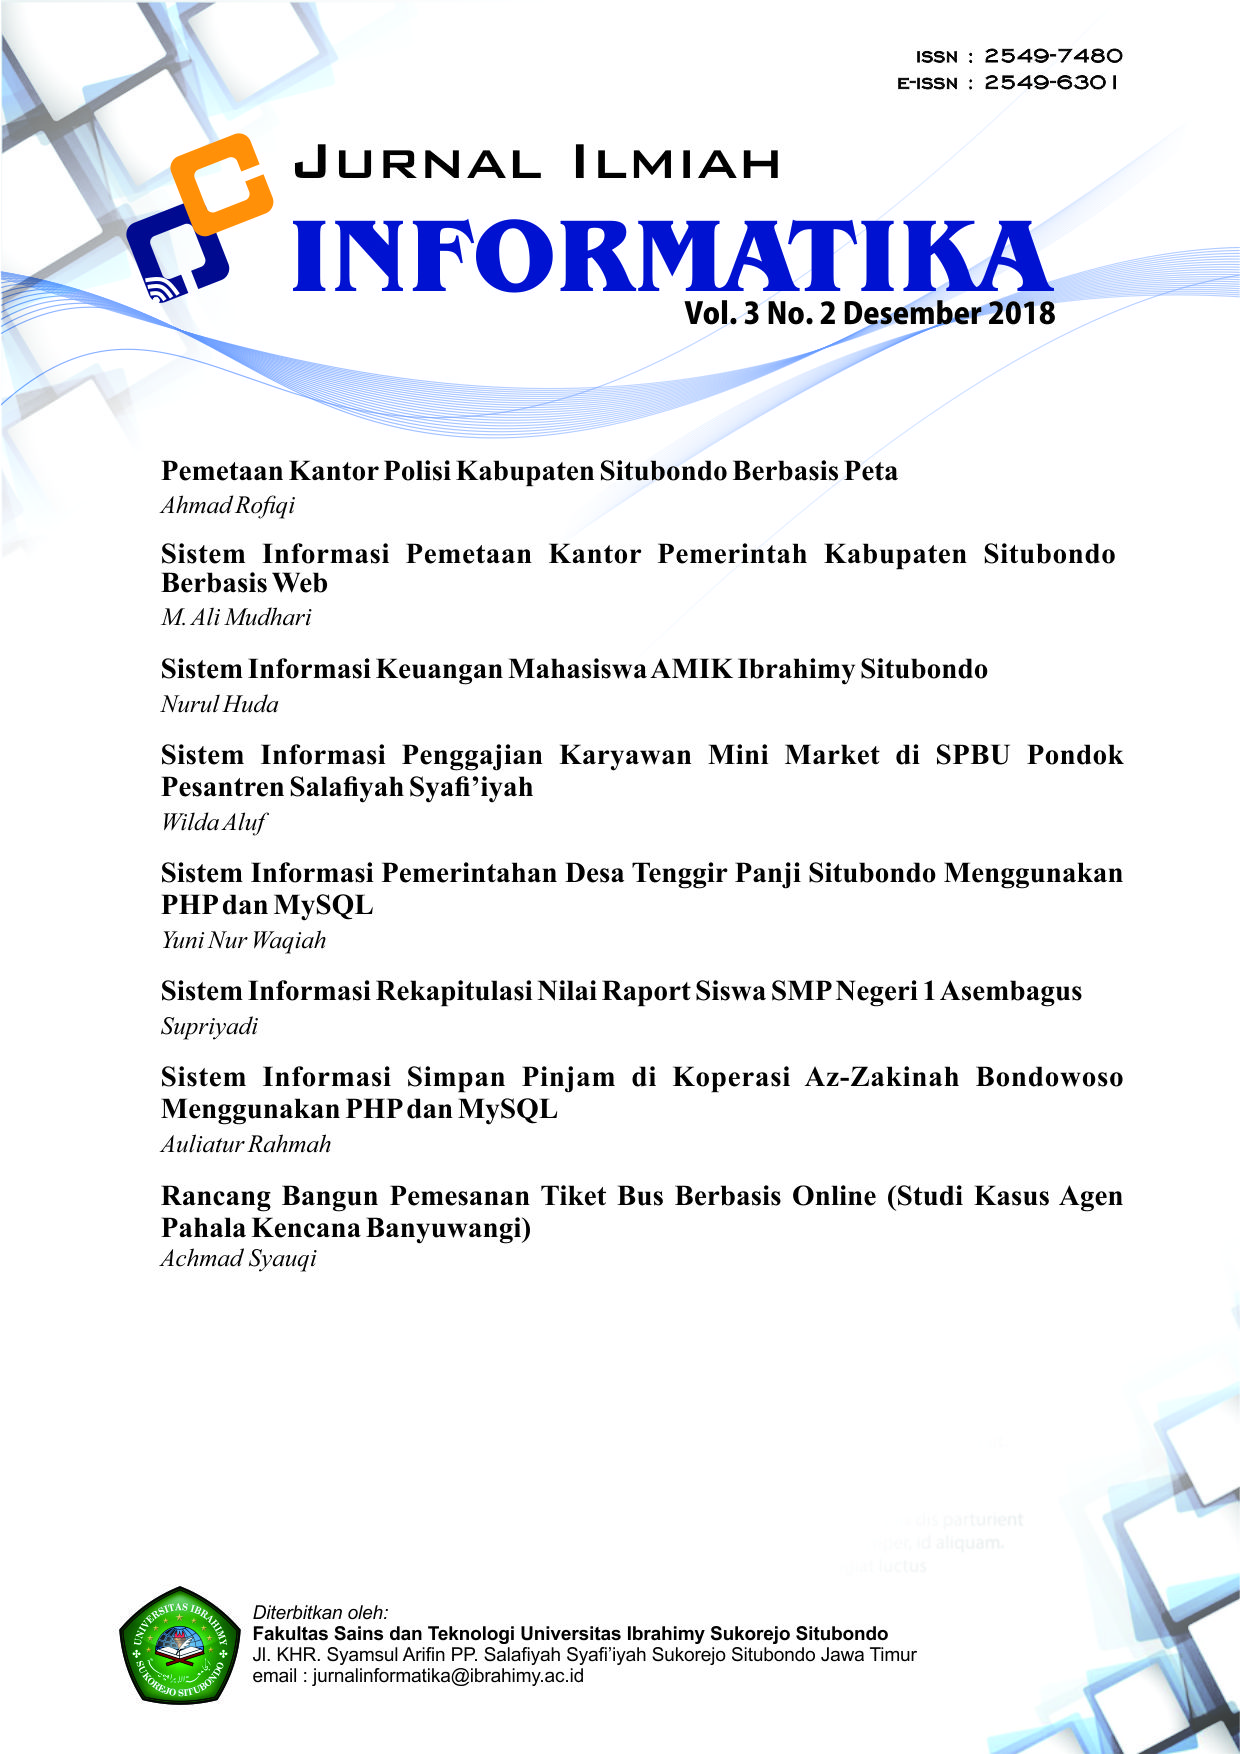 Sistem Informasi Pemetaan Kantor Pemerintah Kabupaten Situbondo